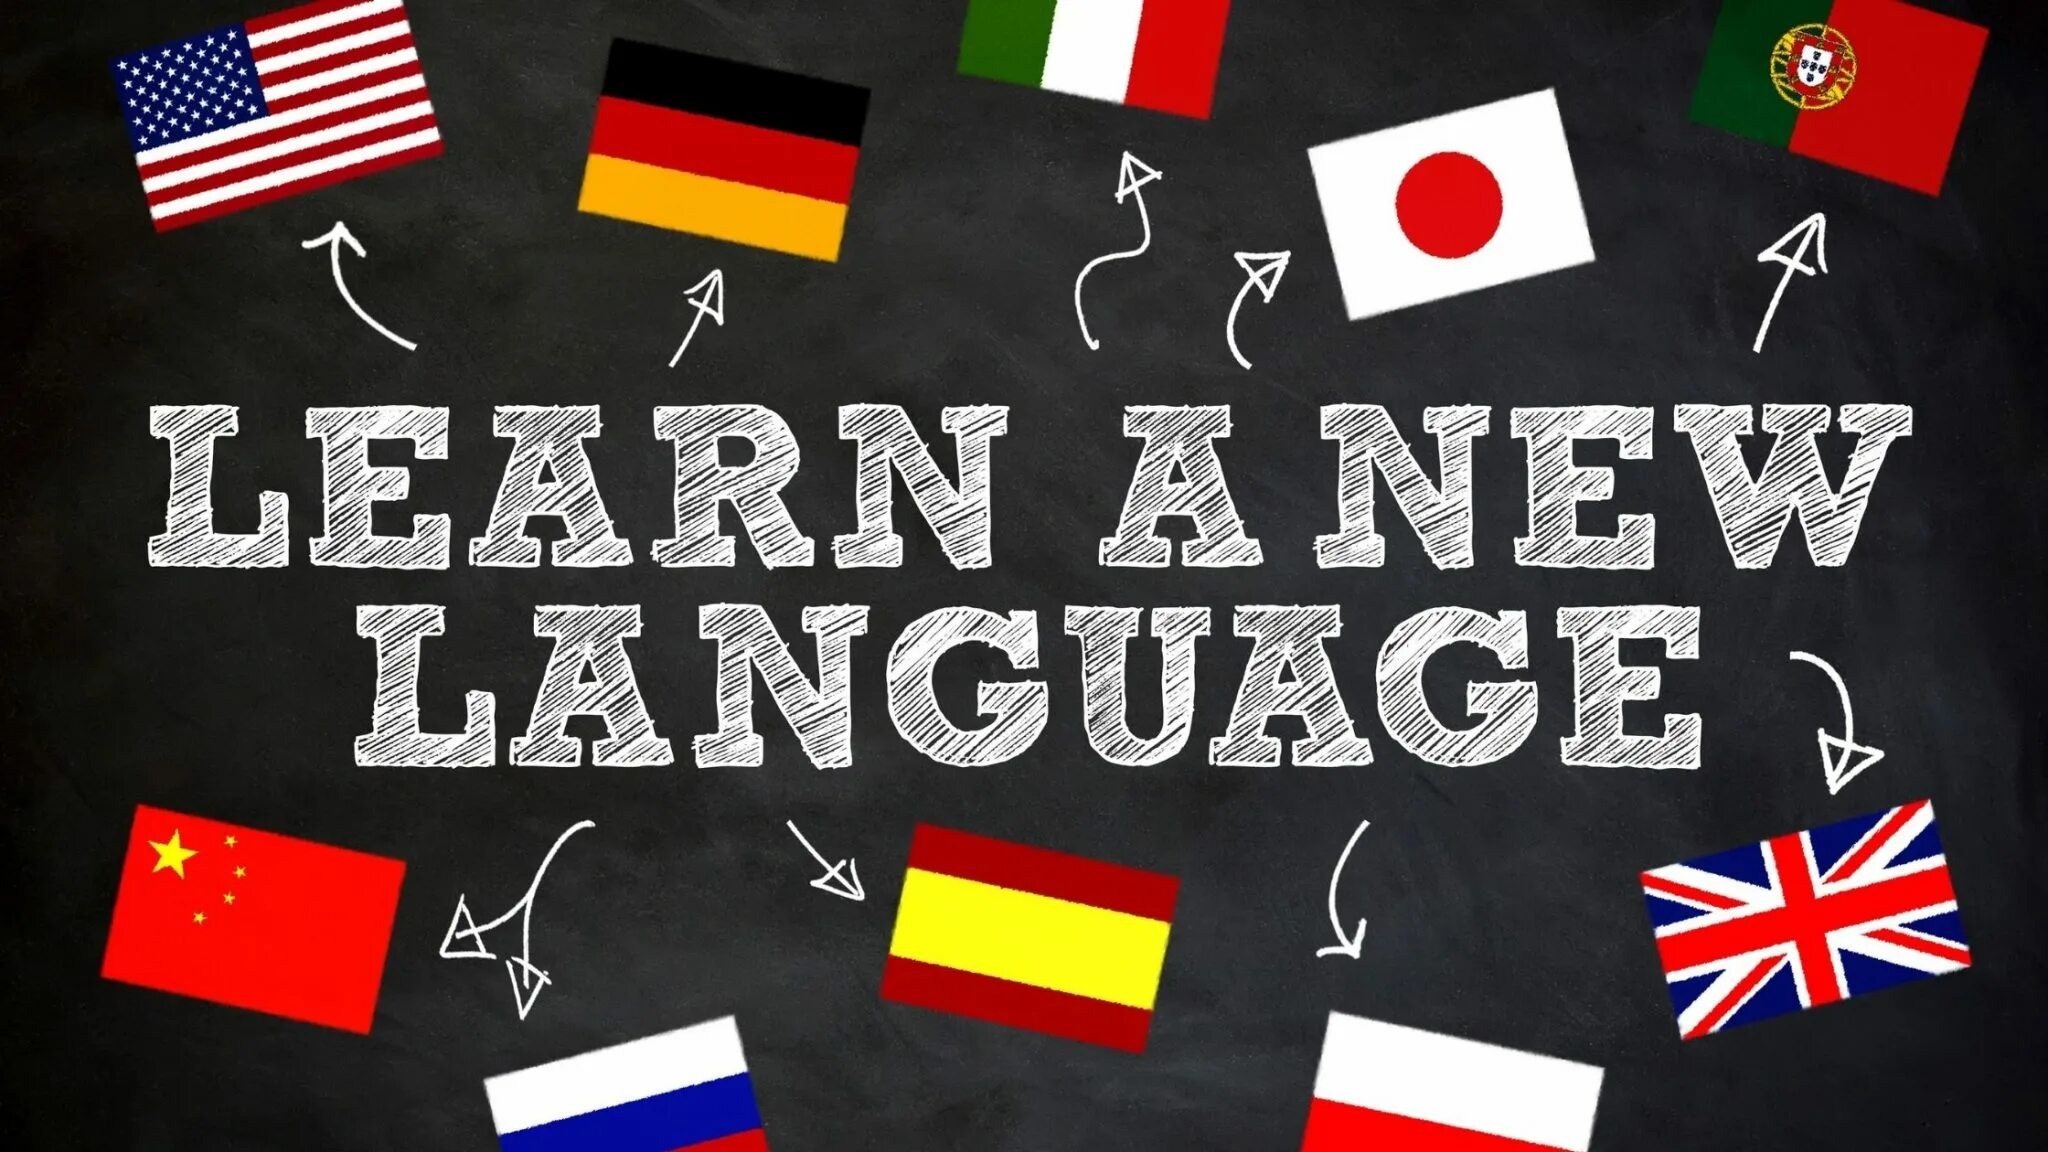 Иностранные языки. Иностранные языки арт. Learning languages.